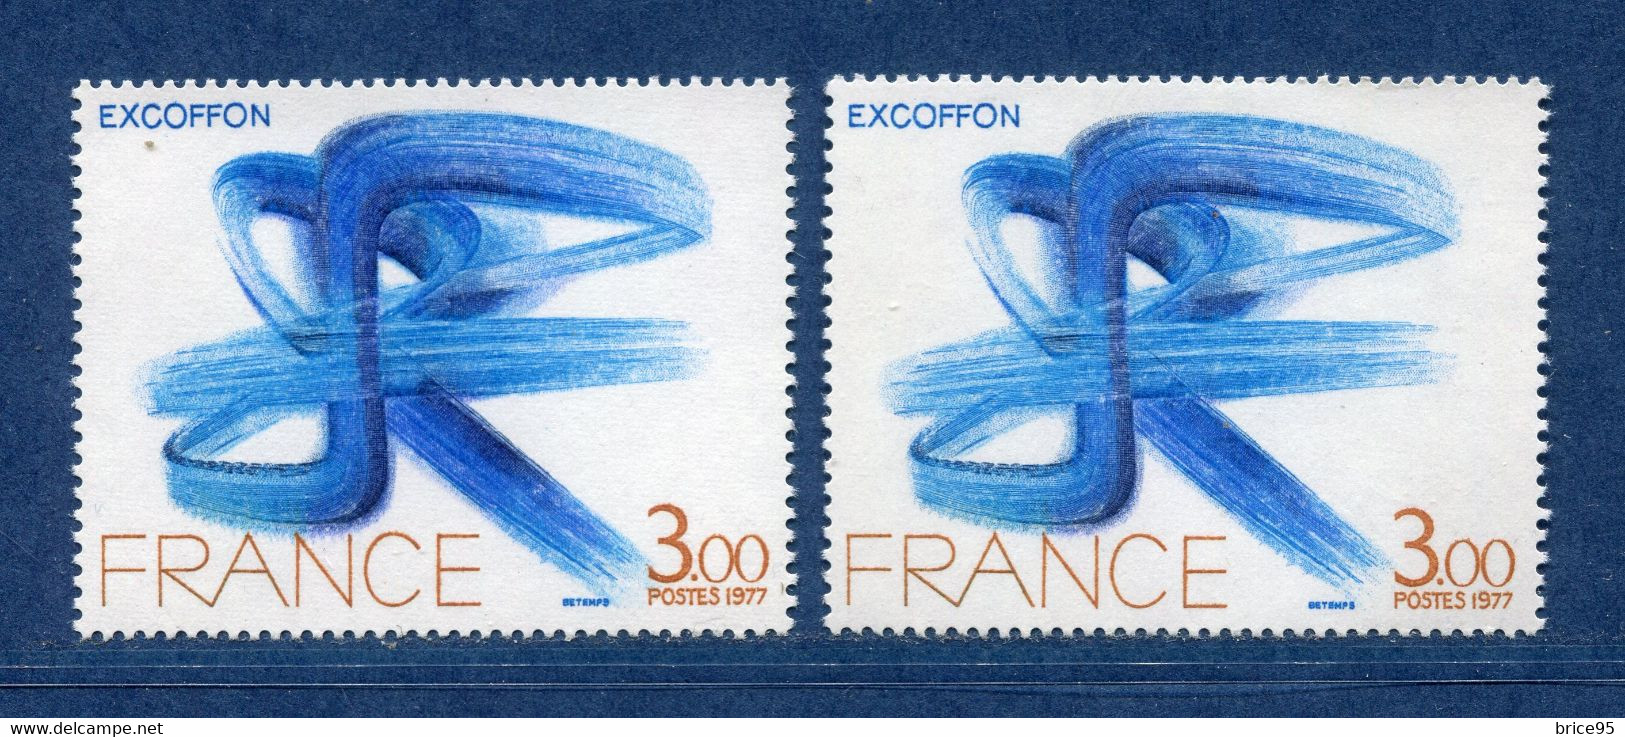 ⭐ France - Variété - YT N° 1951 - Couleurs - Pétouilles - Neuf Sans Charnière - 1977 ⭐ - Ongebruikt